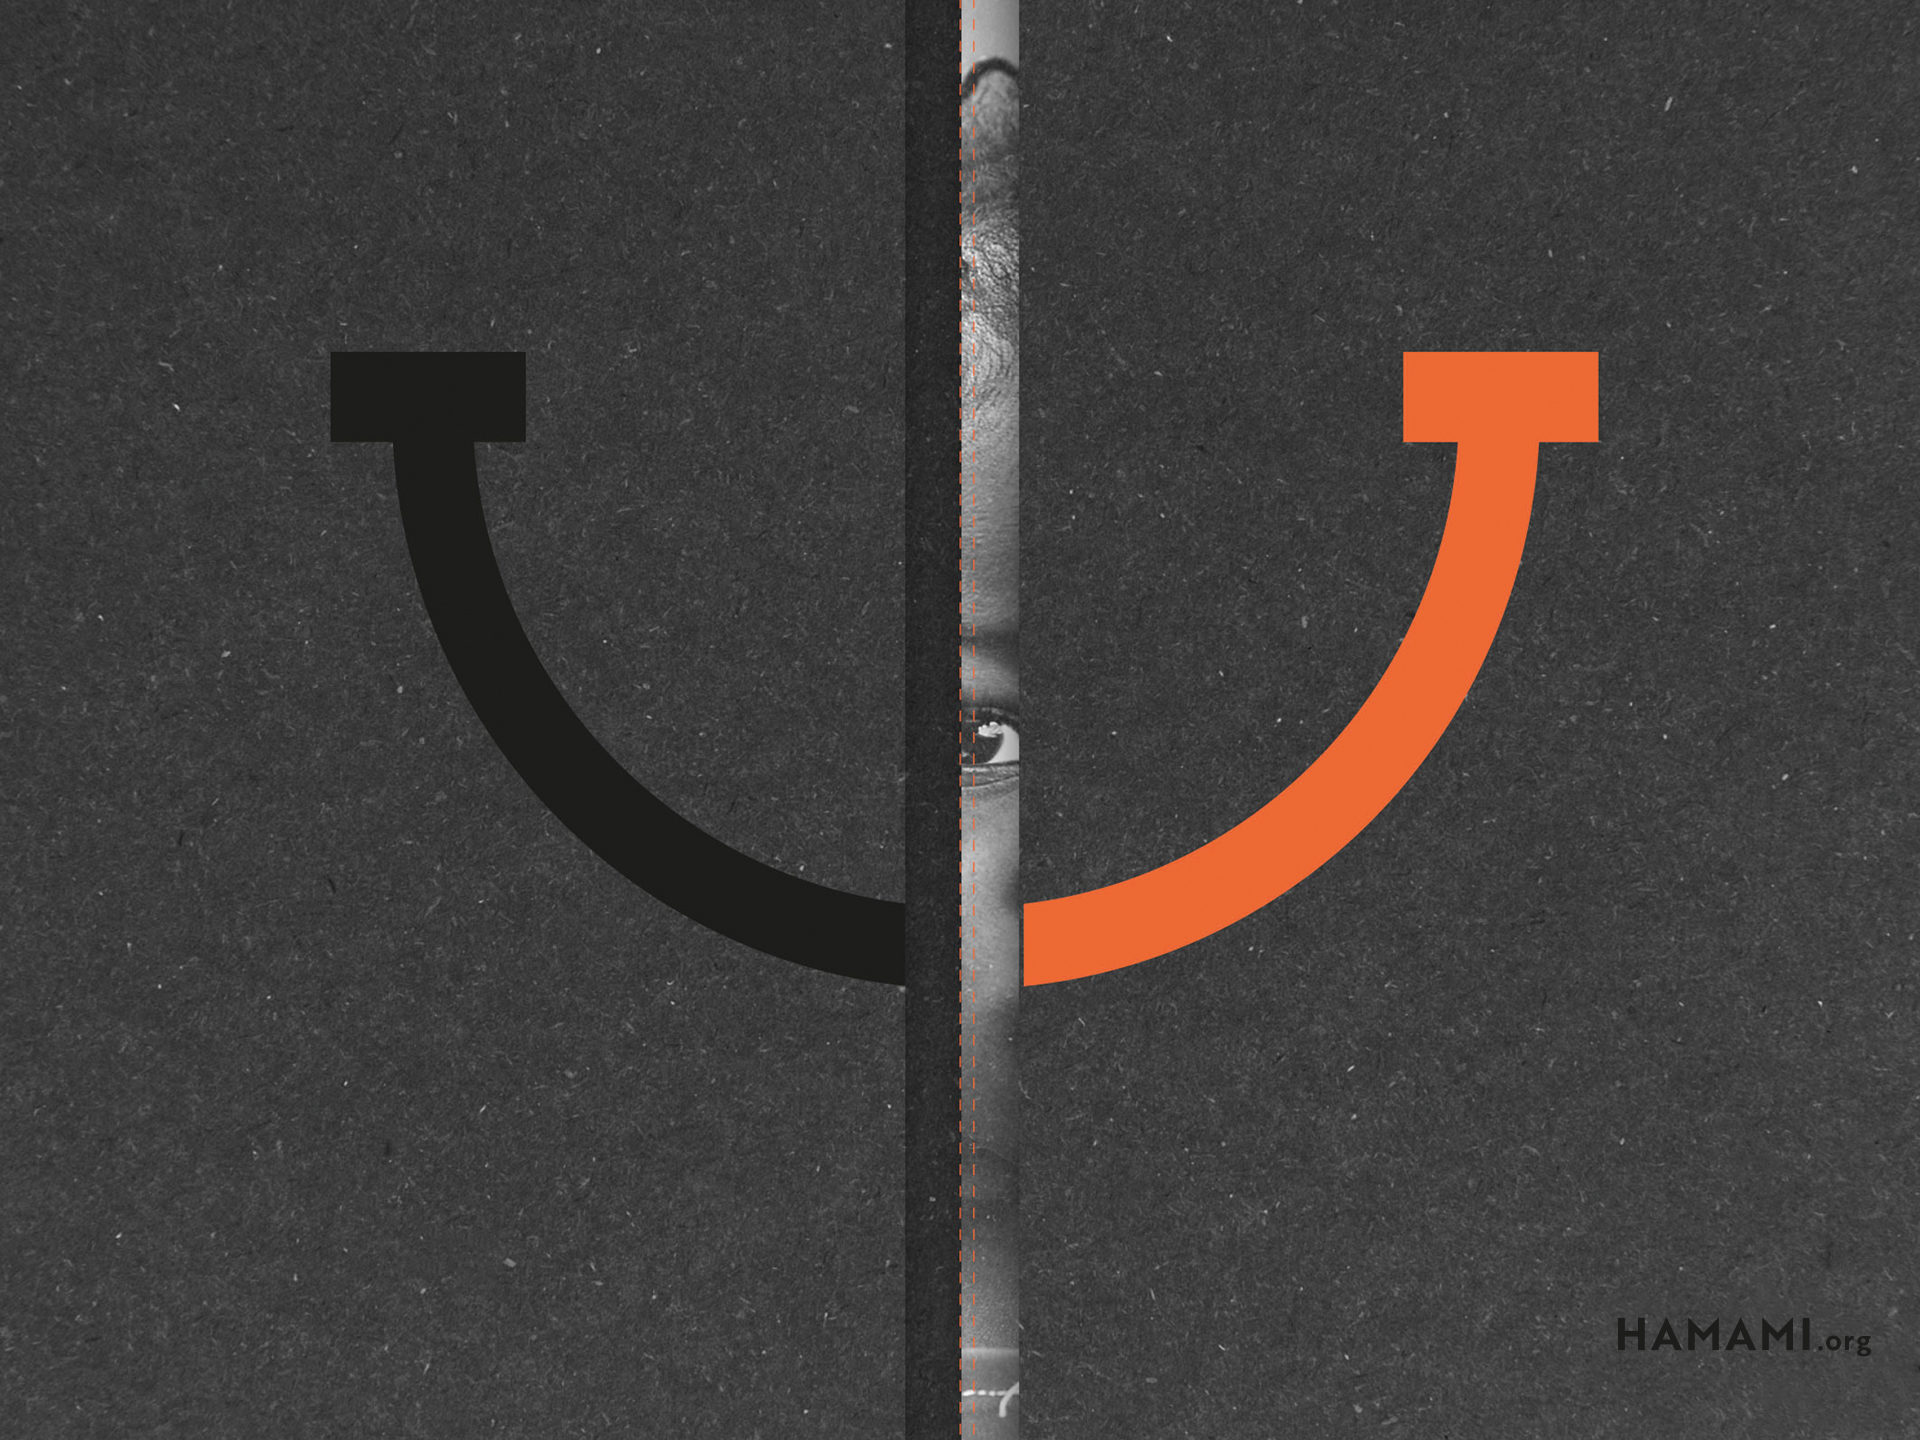 Hamami – Schenk ein Lächeln (19)